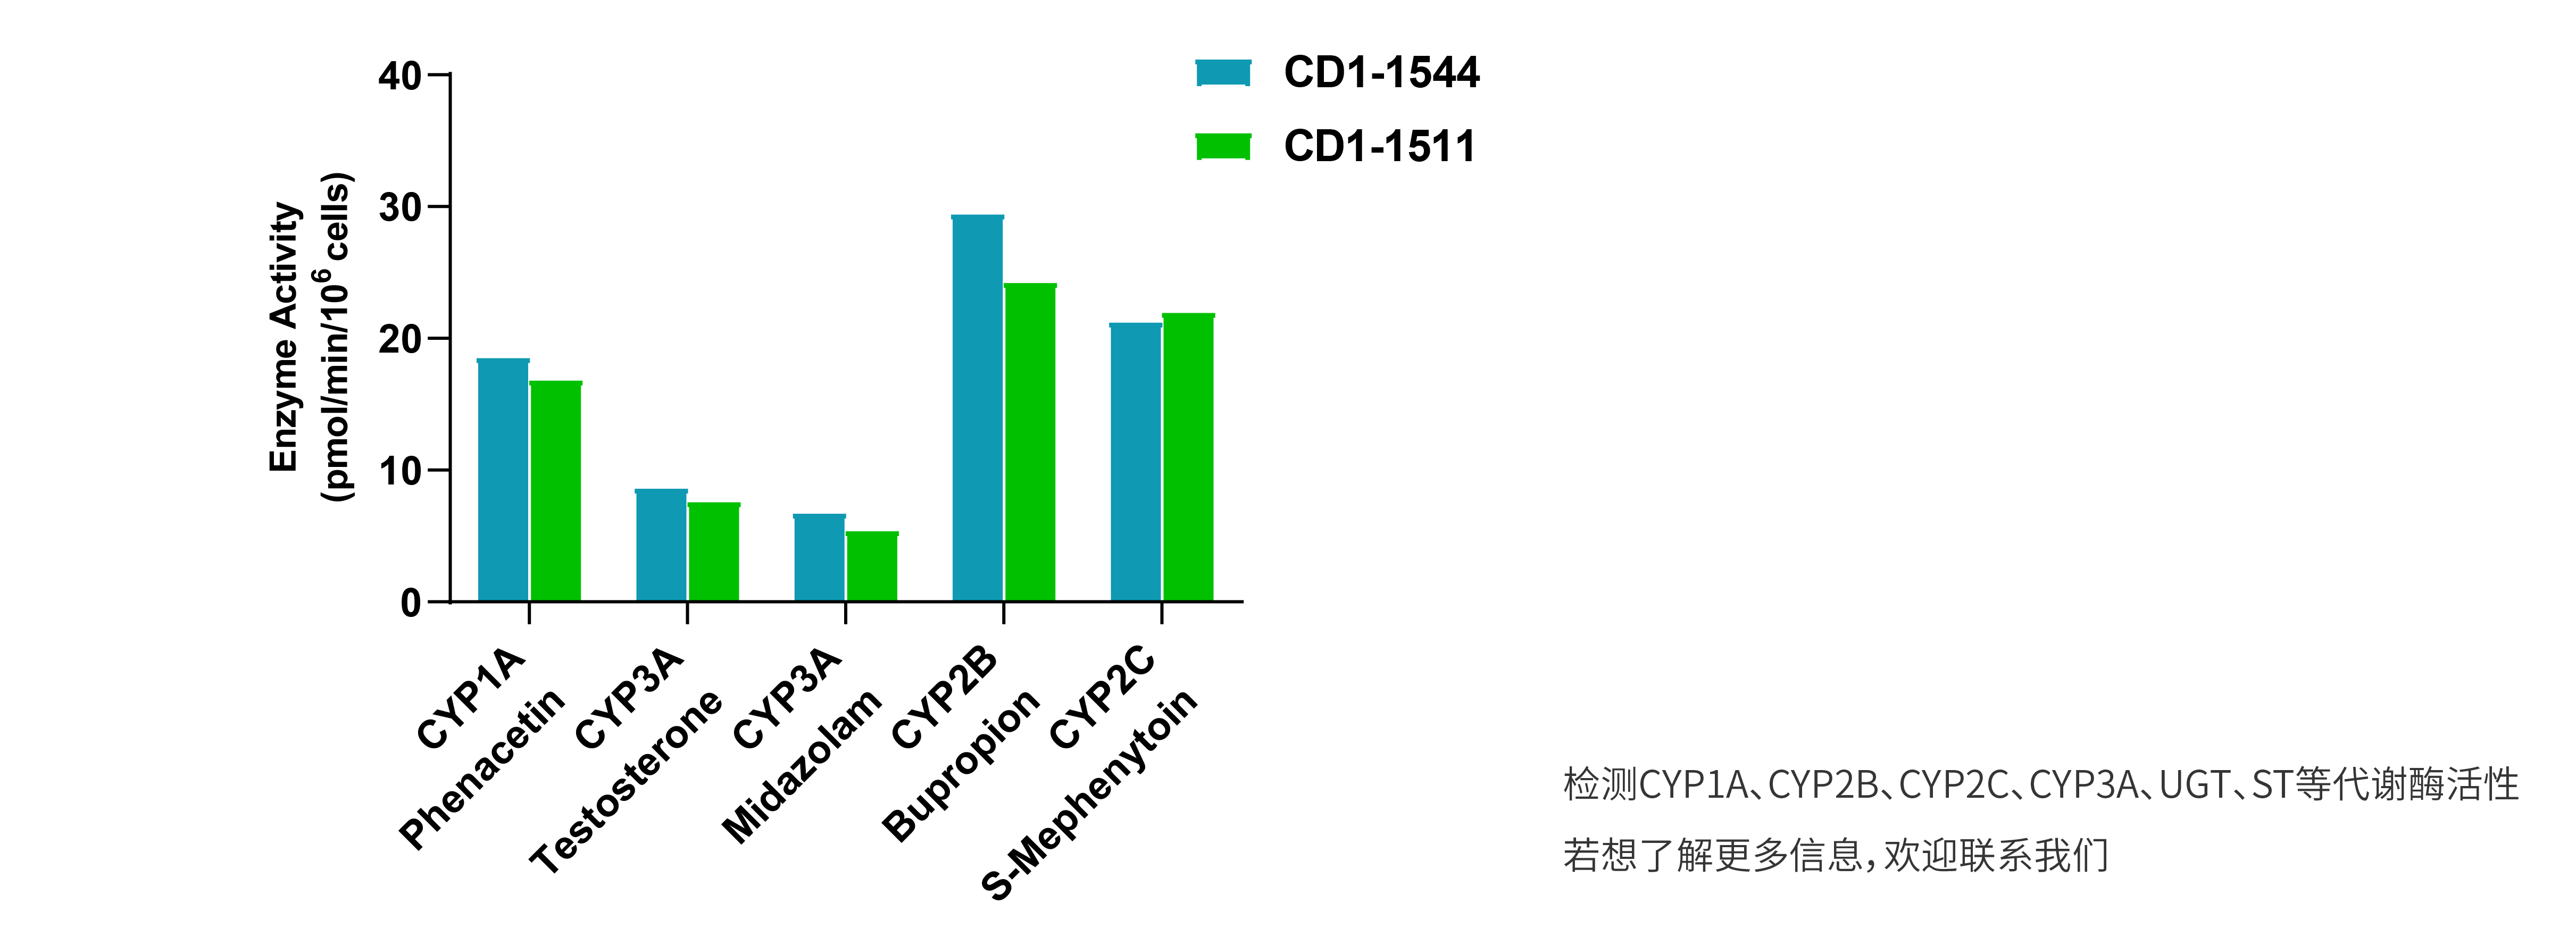 CD-1小鼠冻存悬浮P450酶批次间活性稳定性数据展示